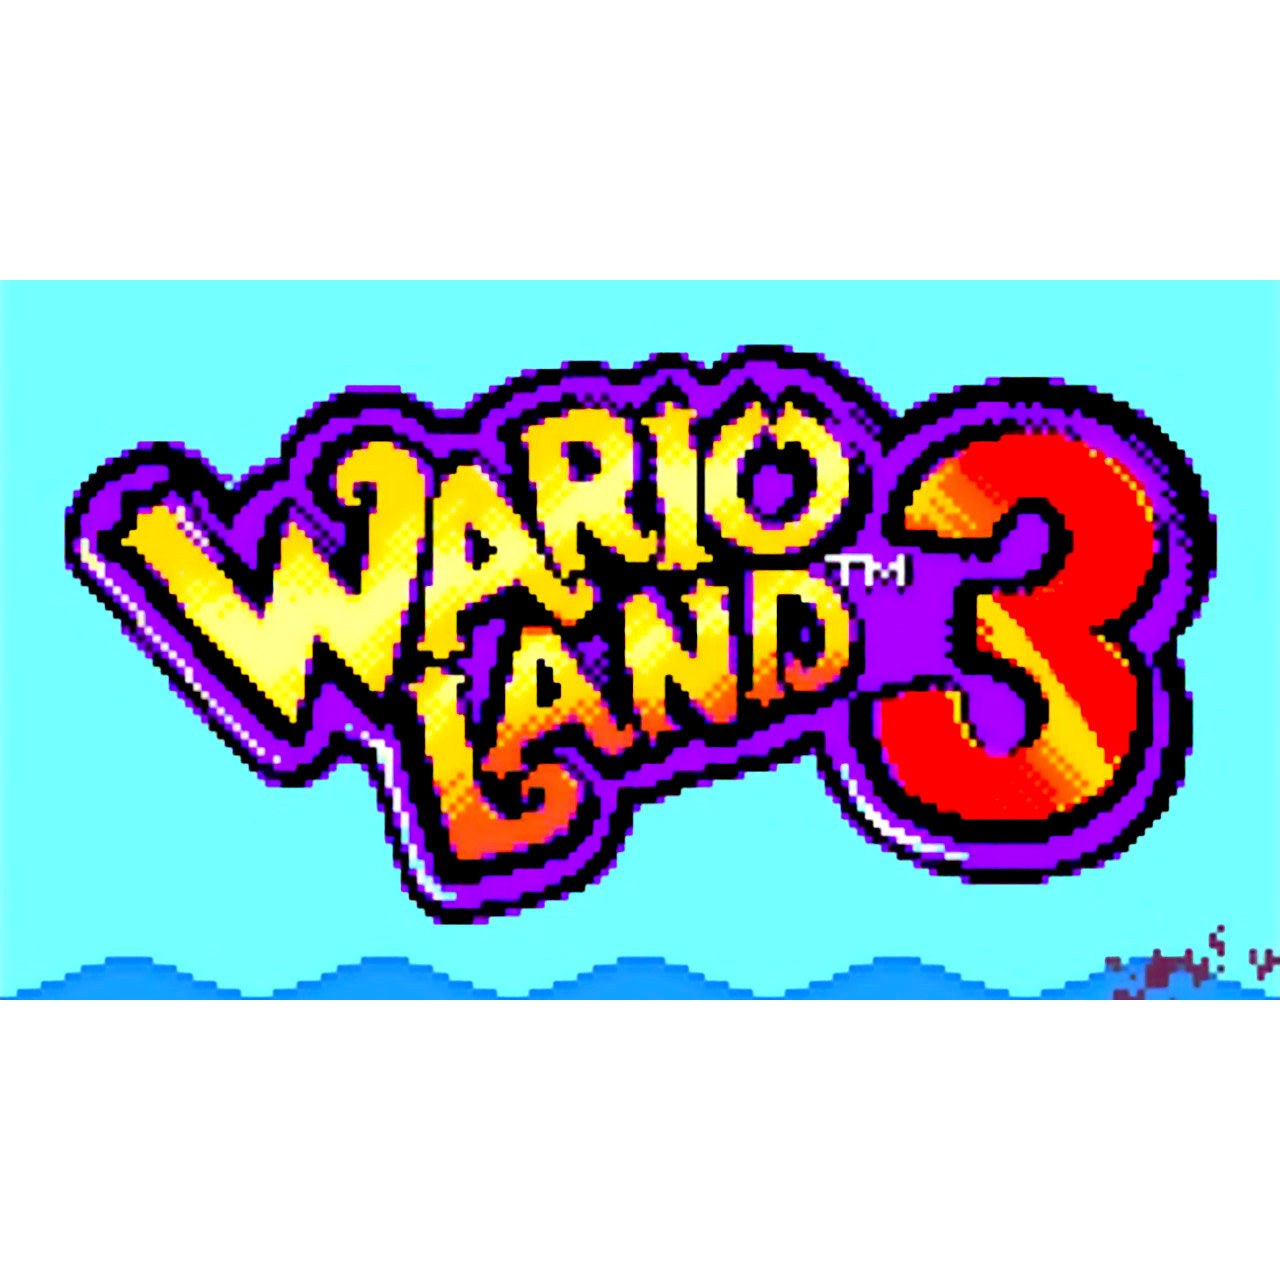 Wario Land 3 Nintendo Game Boy Color Game